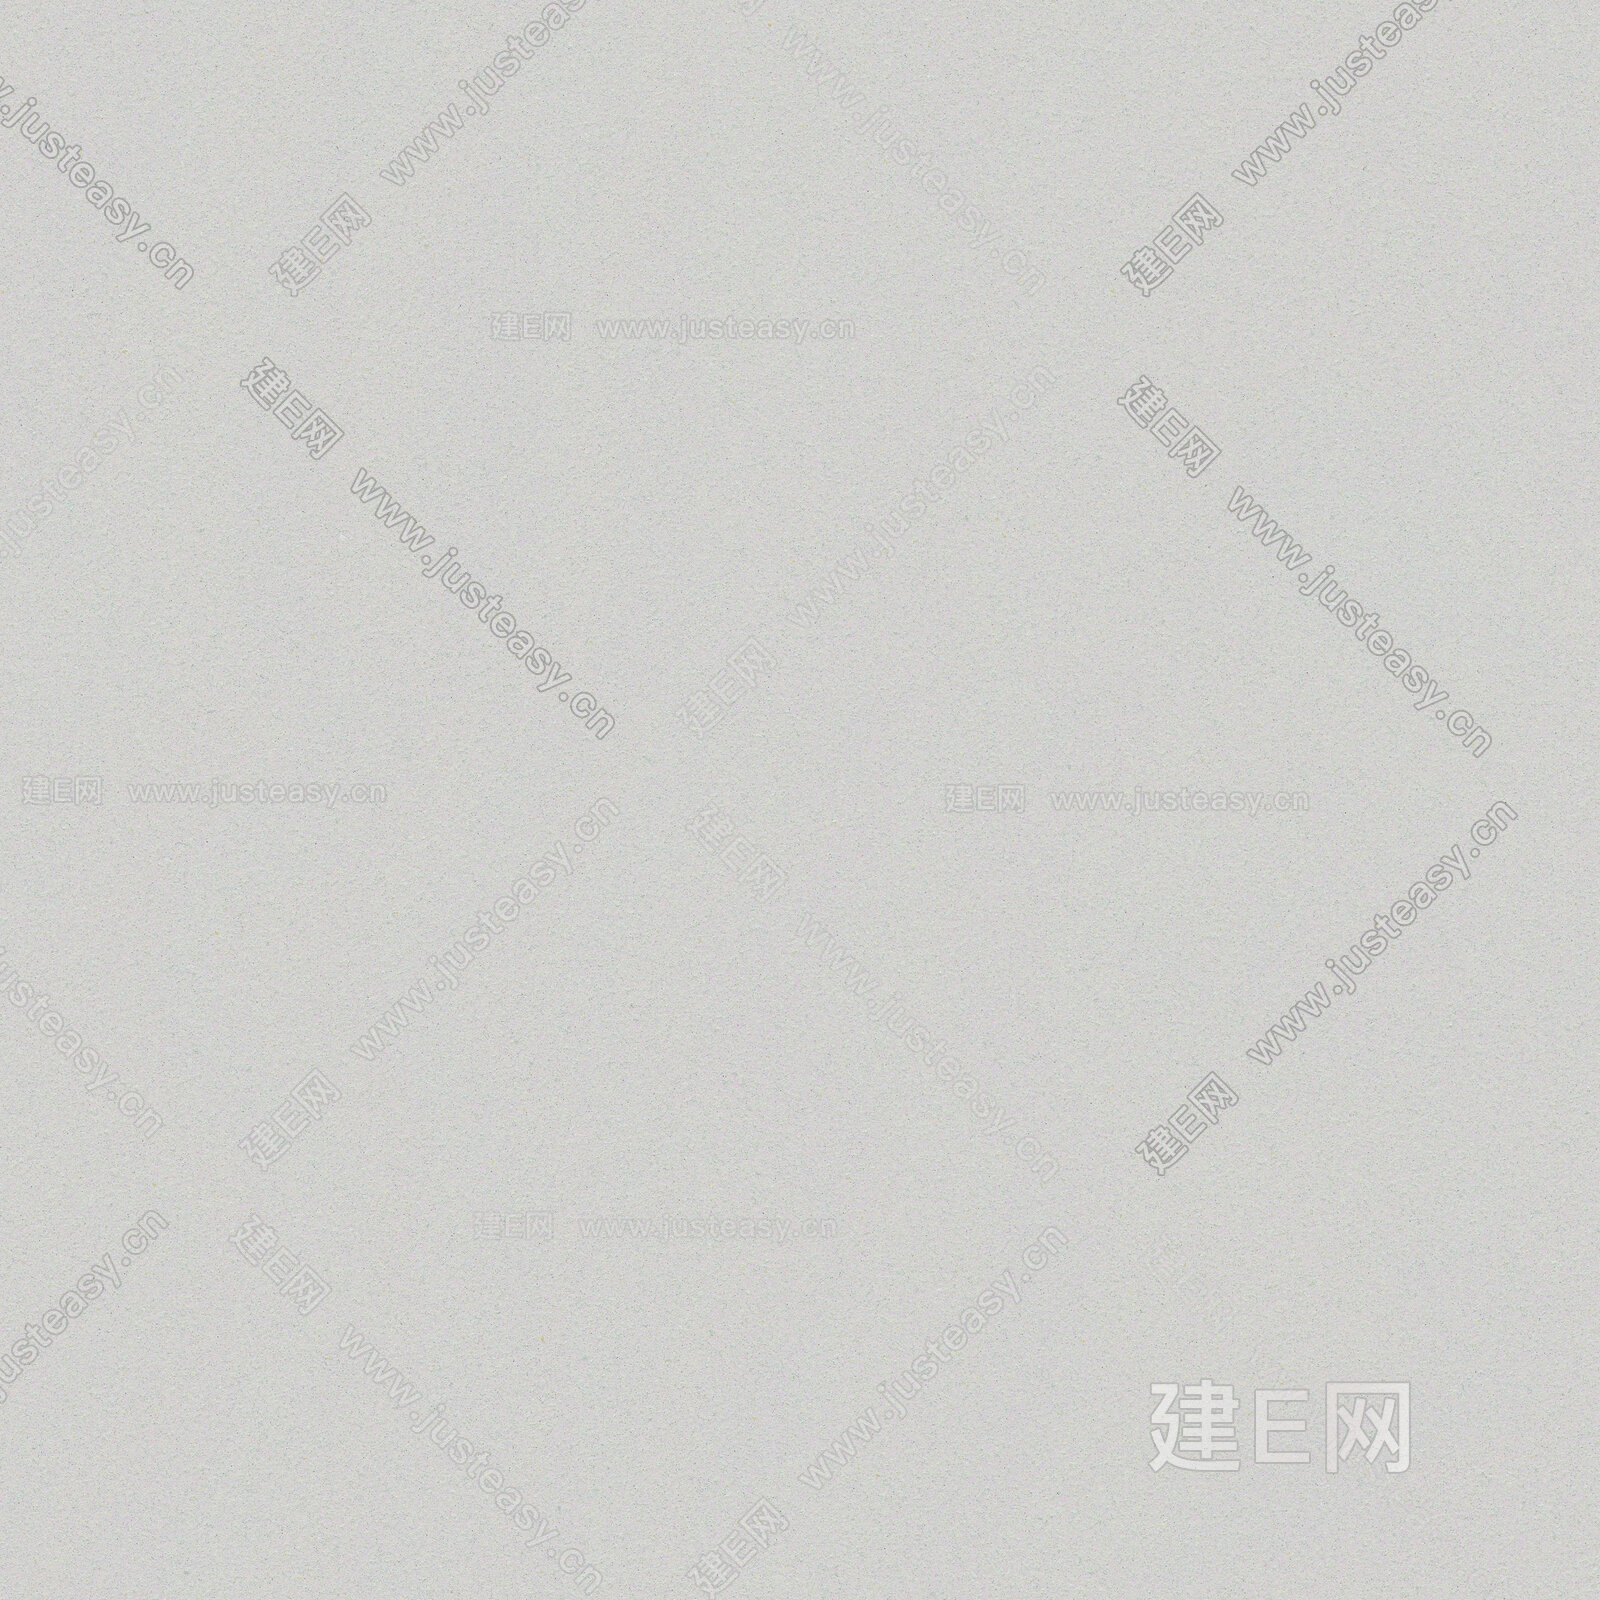 北京西城区鼓楼餐饮内墙象牙白稻草漆施工案例 - 稻草漆 - 欢迎使用PHPCMSX